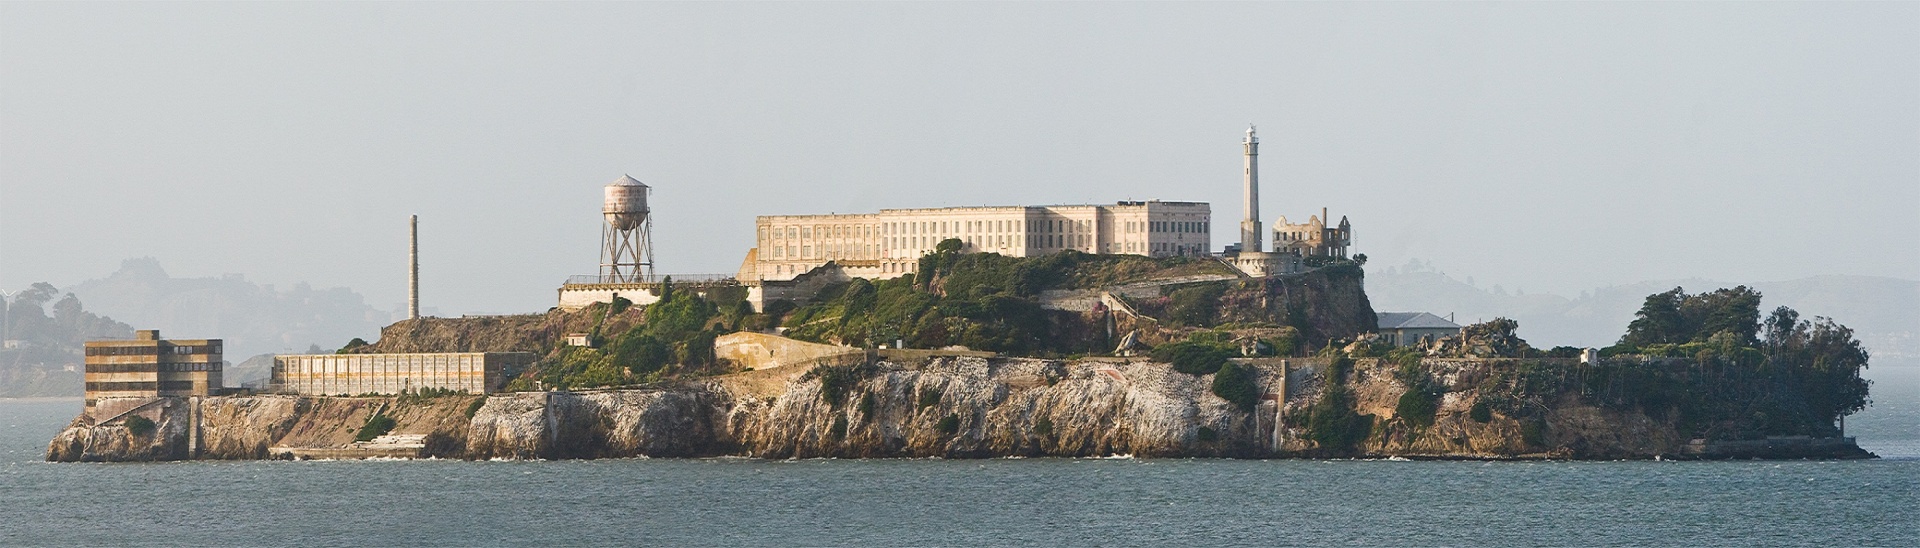 alcatraz island prison free photo